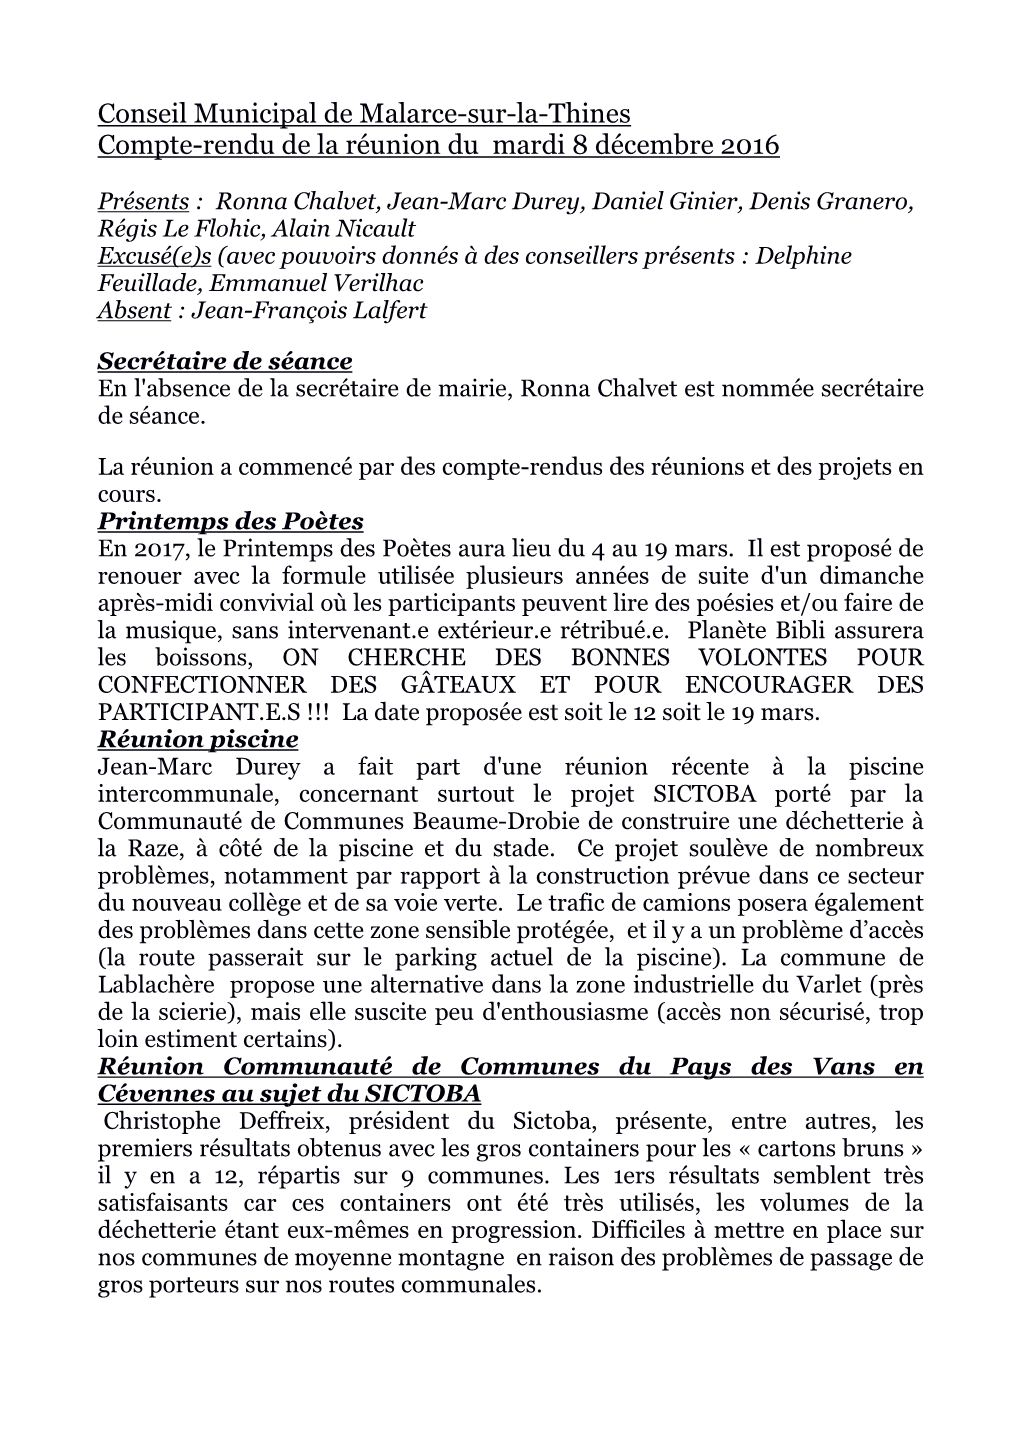 Conseil Municipal De Malarce-Sur-La-Thines Compte-Rendu De La Réunion Du Mardi 8 Décembre 2016